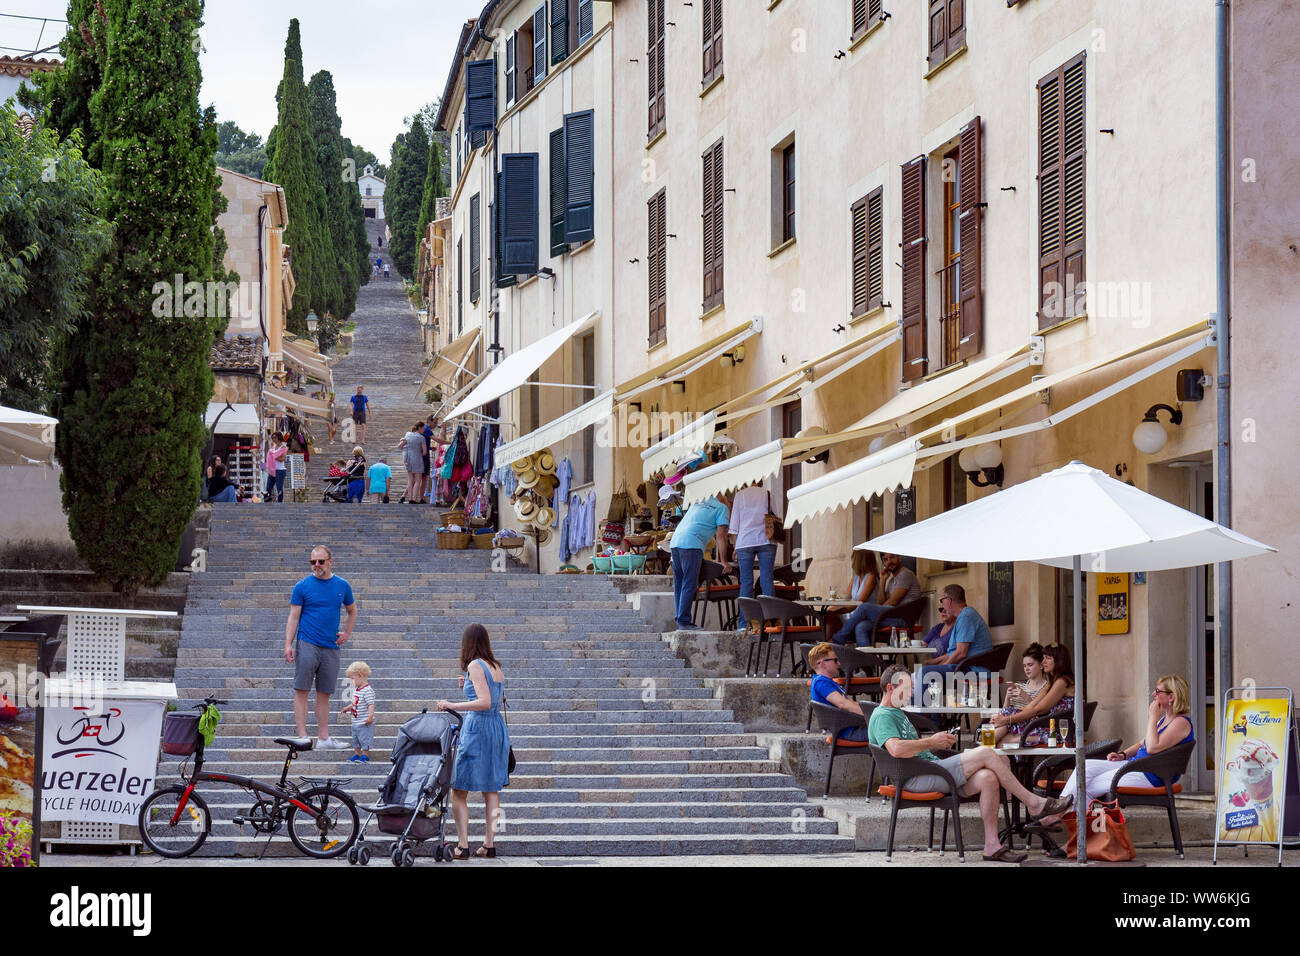 Le scale che portano al Calvario, Pollenca, città nel nord-est dell'isola di Mallorca, Mare mediterraneo, Isole Baleari, Spagna, Europa meridionale Foto Stock